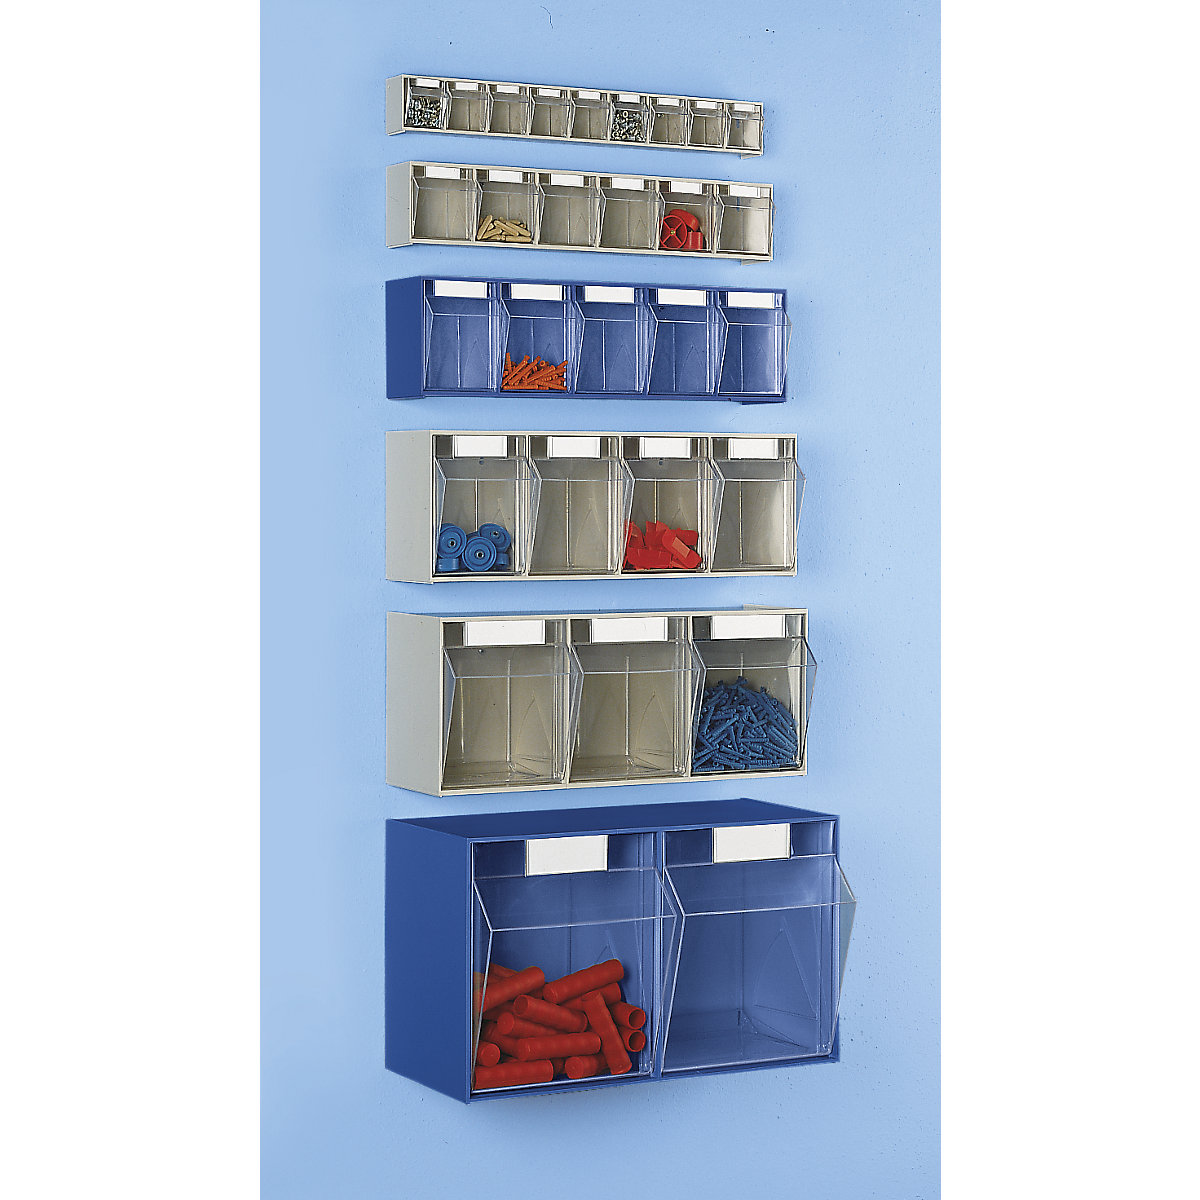 Sustav složivih kutija, VxŠxD kućišta 353 x 600 x 299 mm, 2 kutije, u plavoj boji, od 10 kom.-1